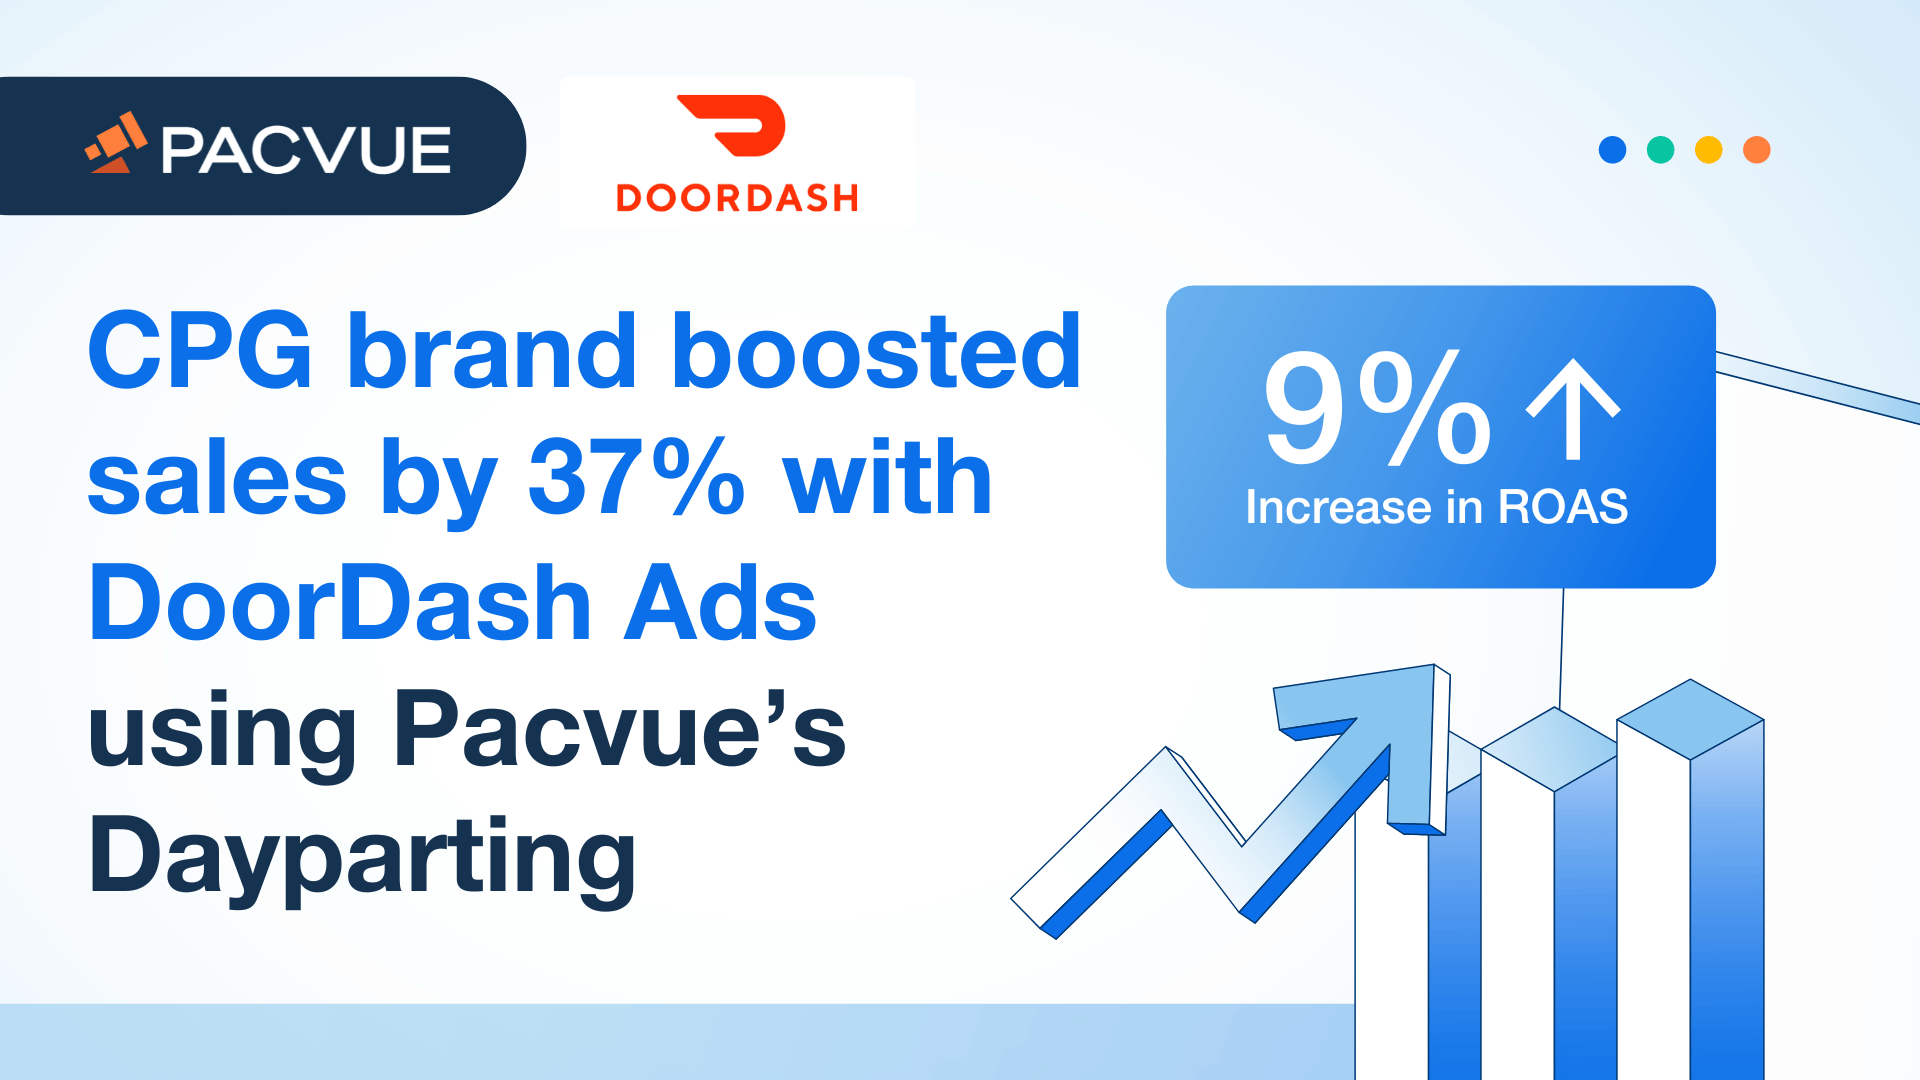 La marque de produits de grande consommation a augmenté ses ventes de 37 % grâce aux publicités DoorDash utilisant le Dayparting de Pacvue.